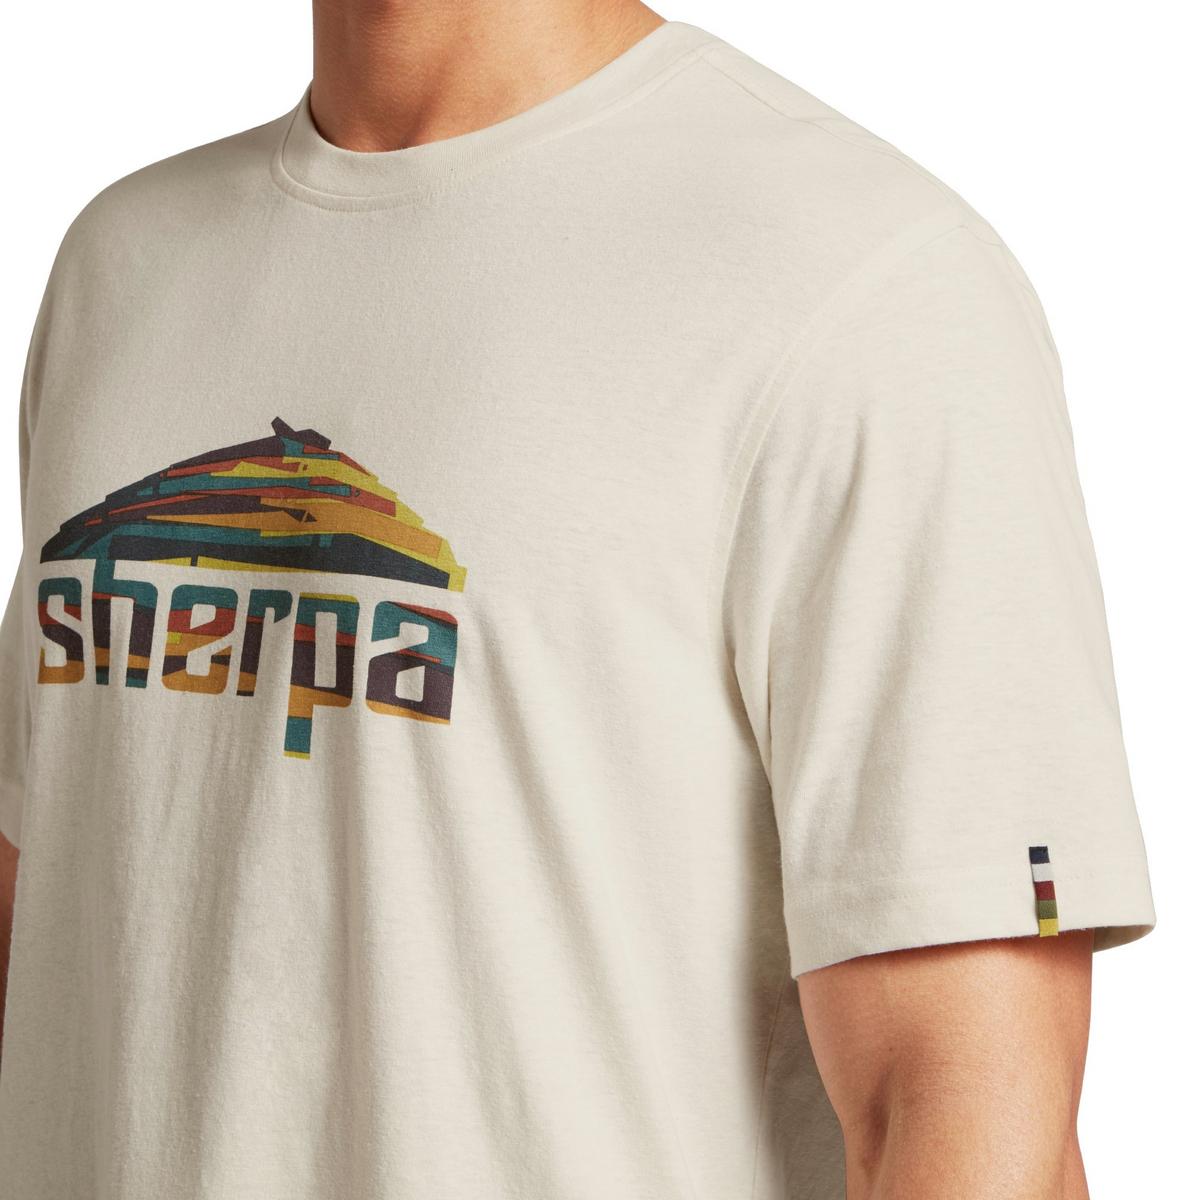 Sherpa Adventure Men's Sherpa Mountain T-Shirt - Cream